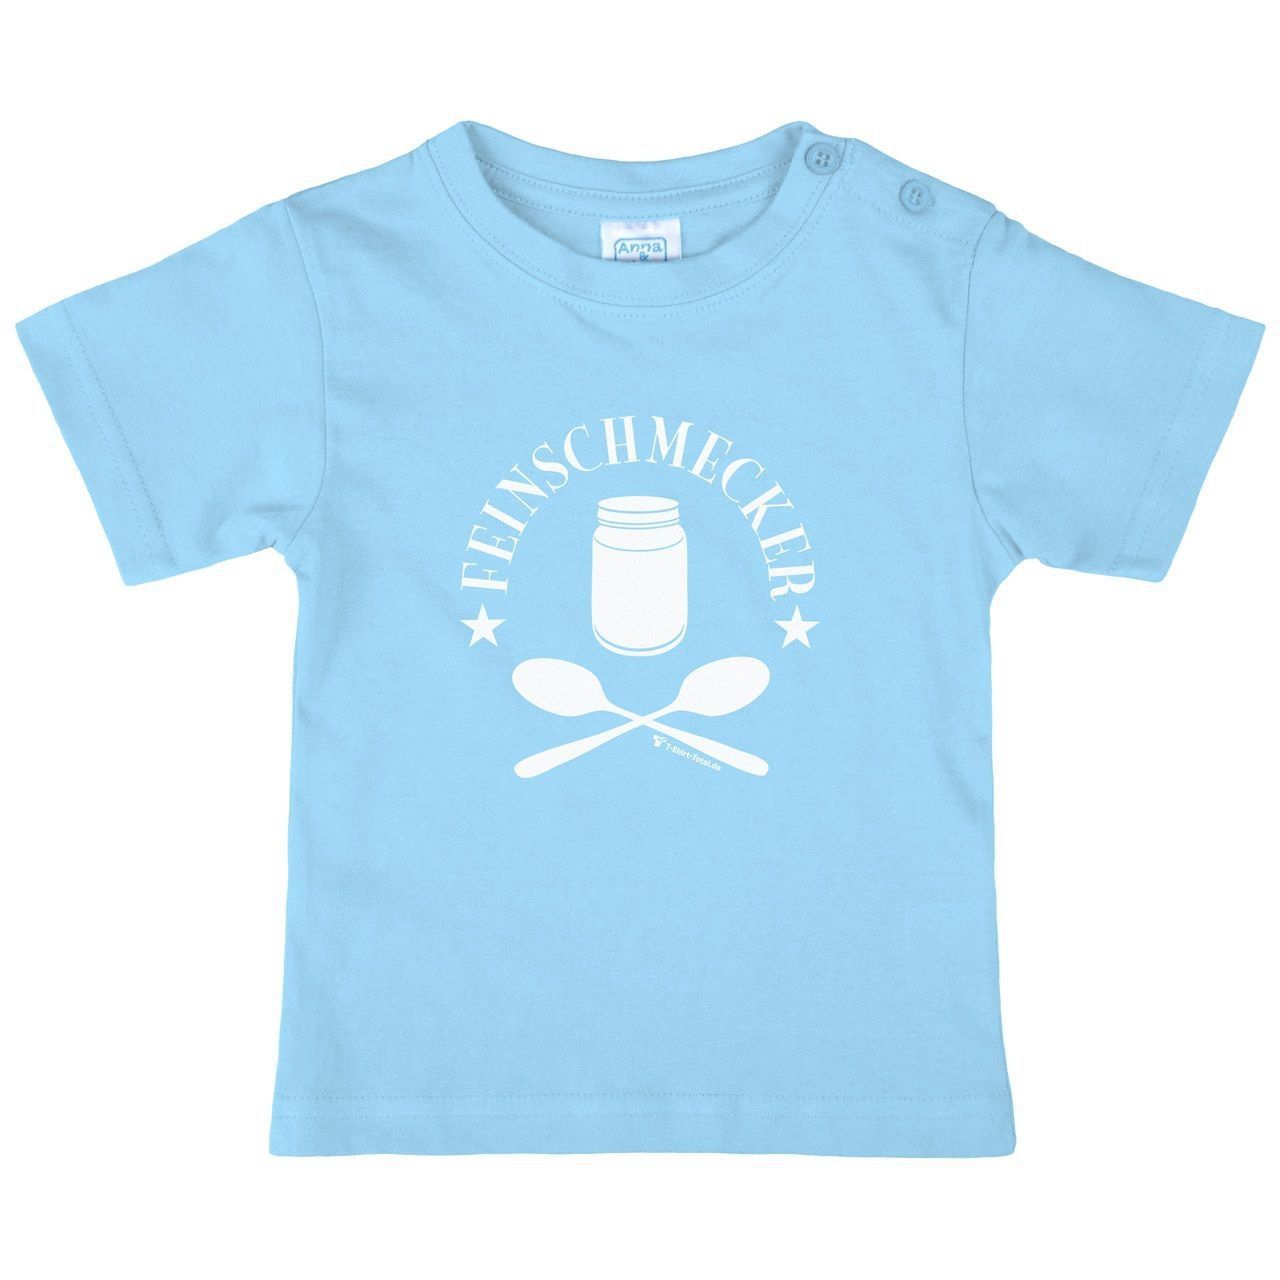 Feinschmecker Kinder T-Shirt hellblau 56 / 62